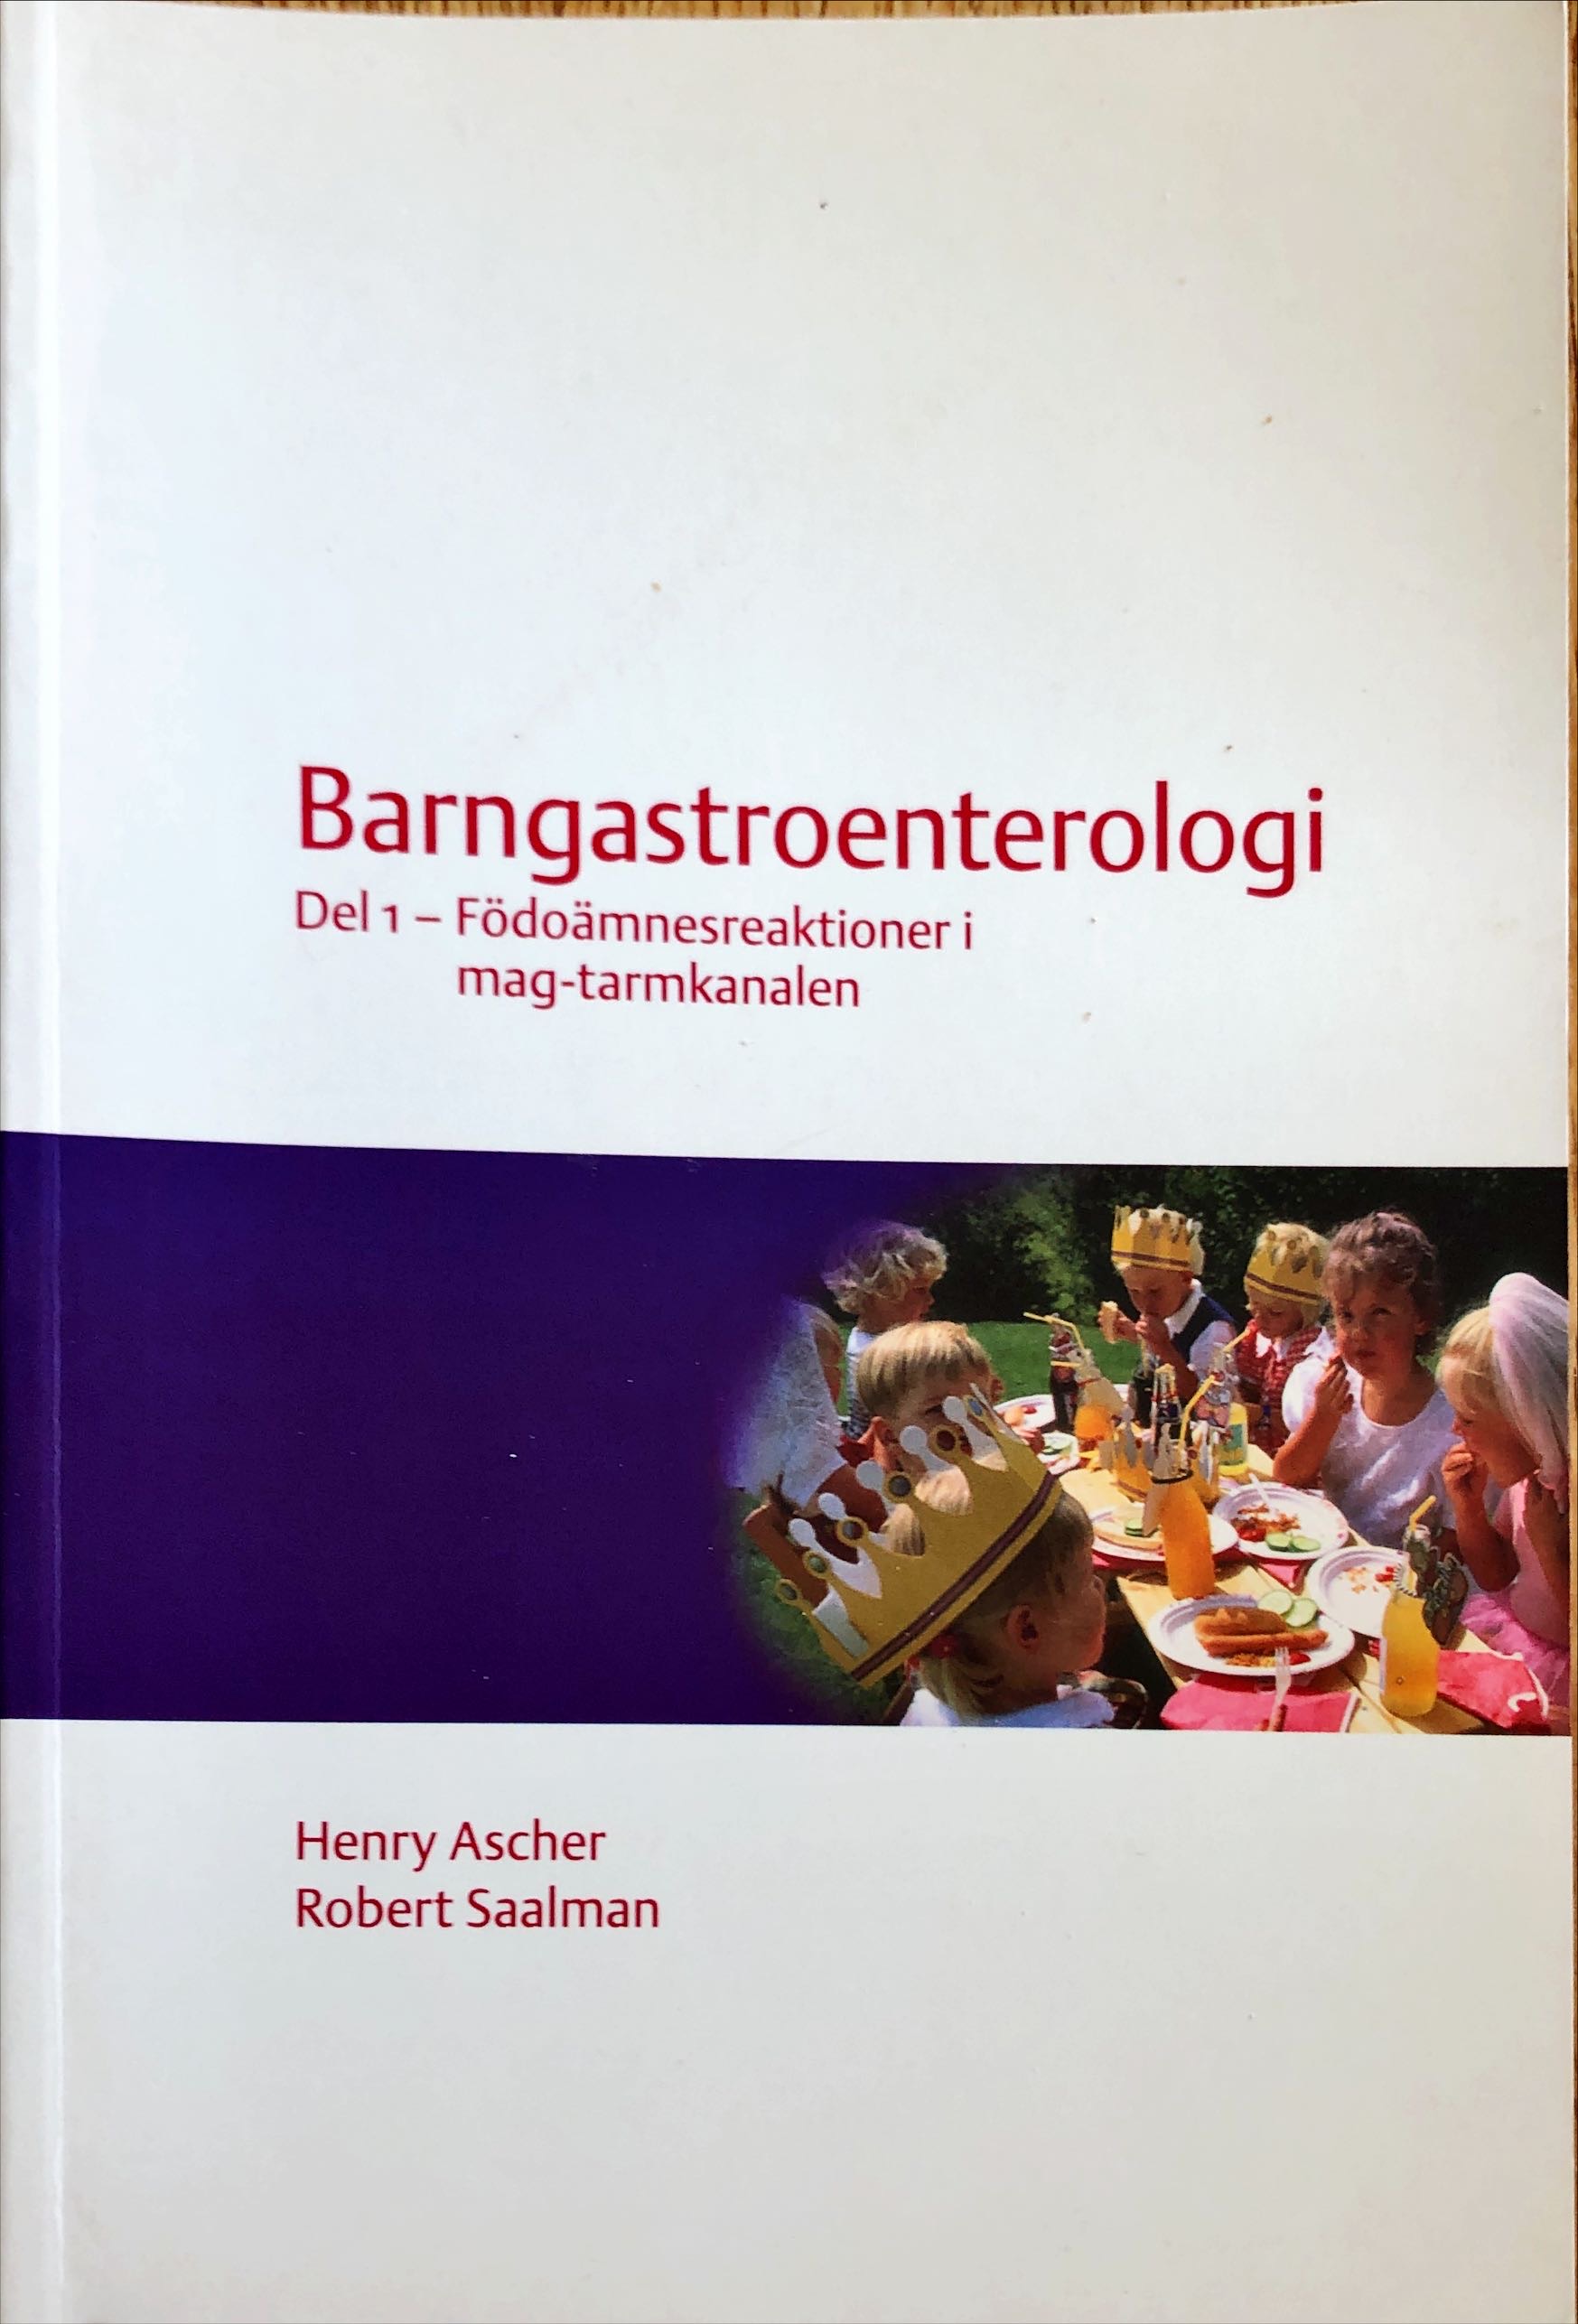 Barngastroenterologi; Henry Ascher; 2003